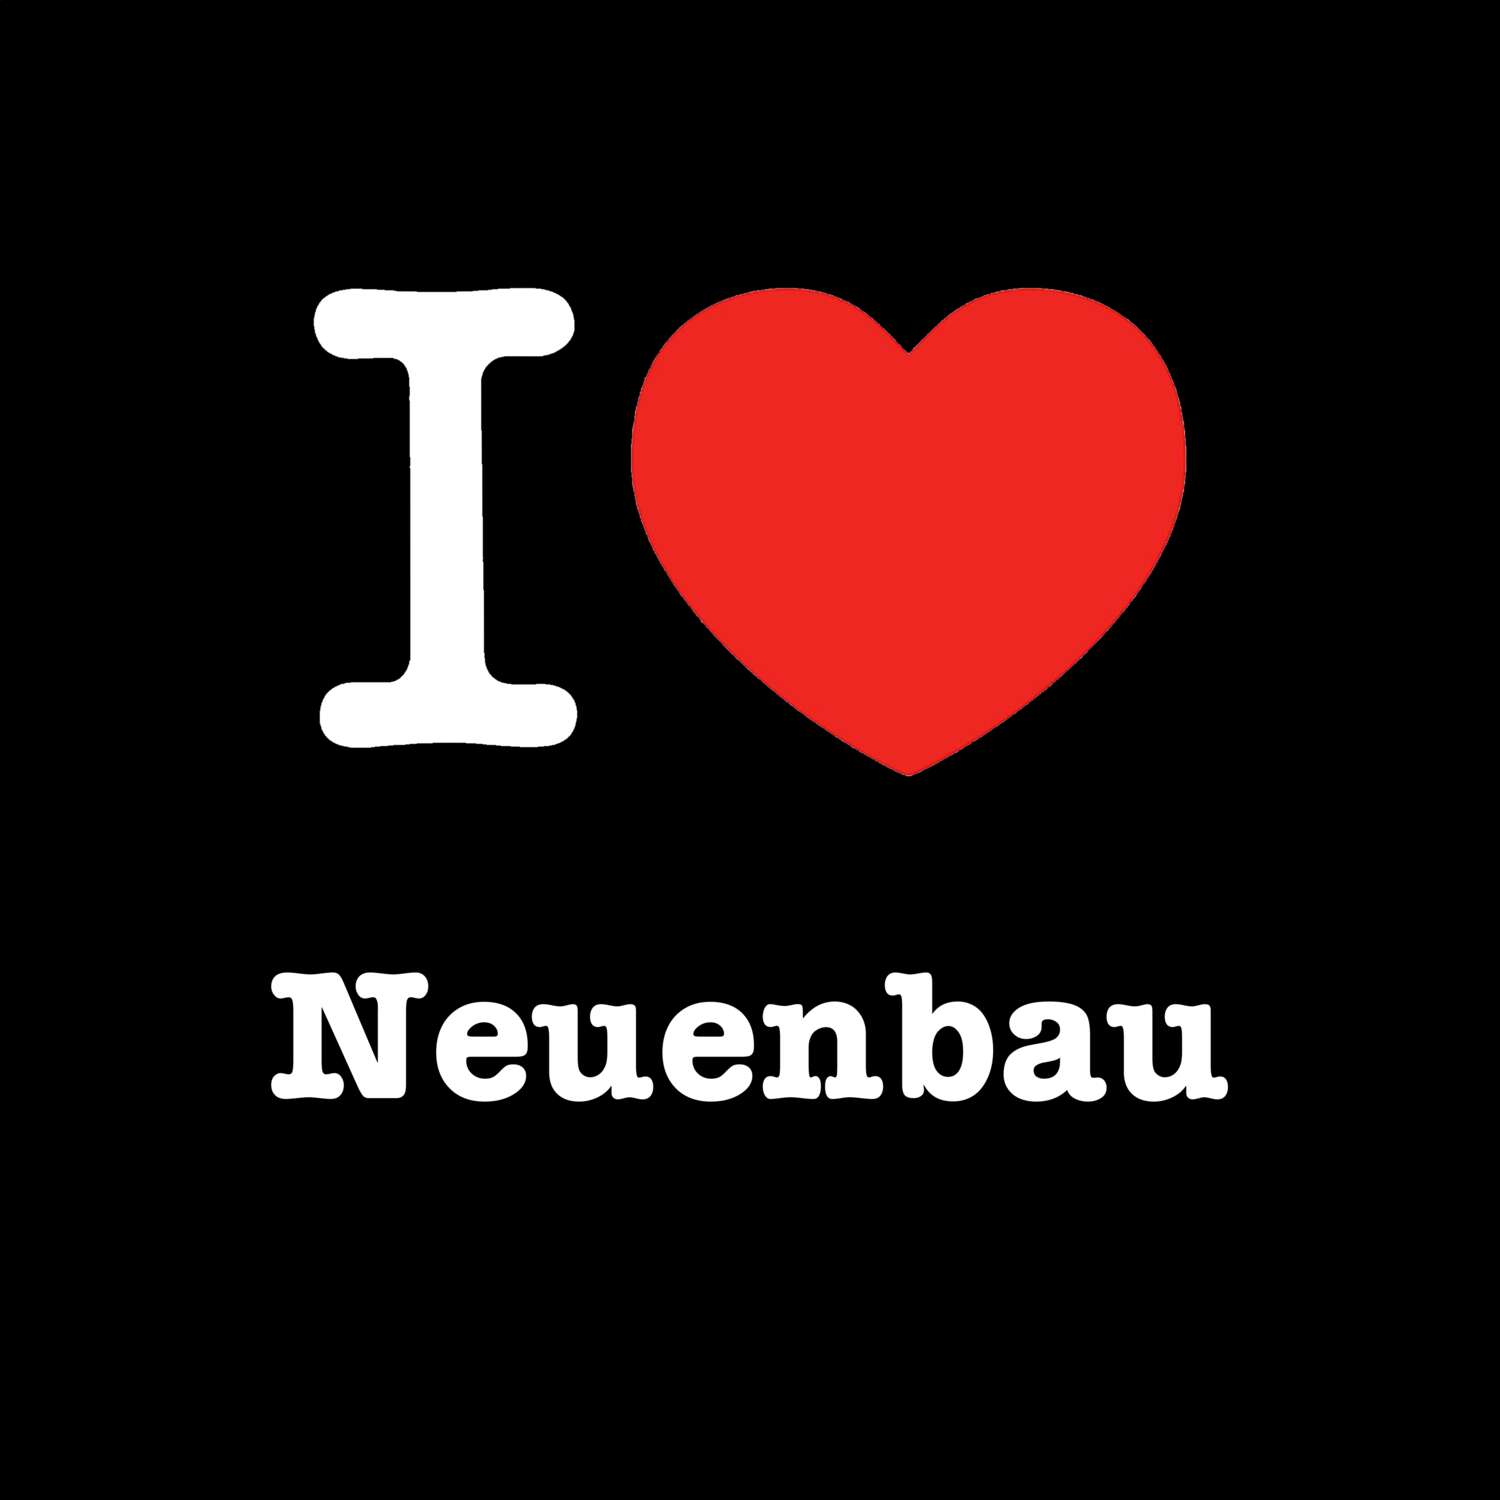 Neuenbau T-Shirt »I love«